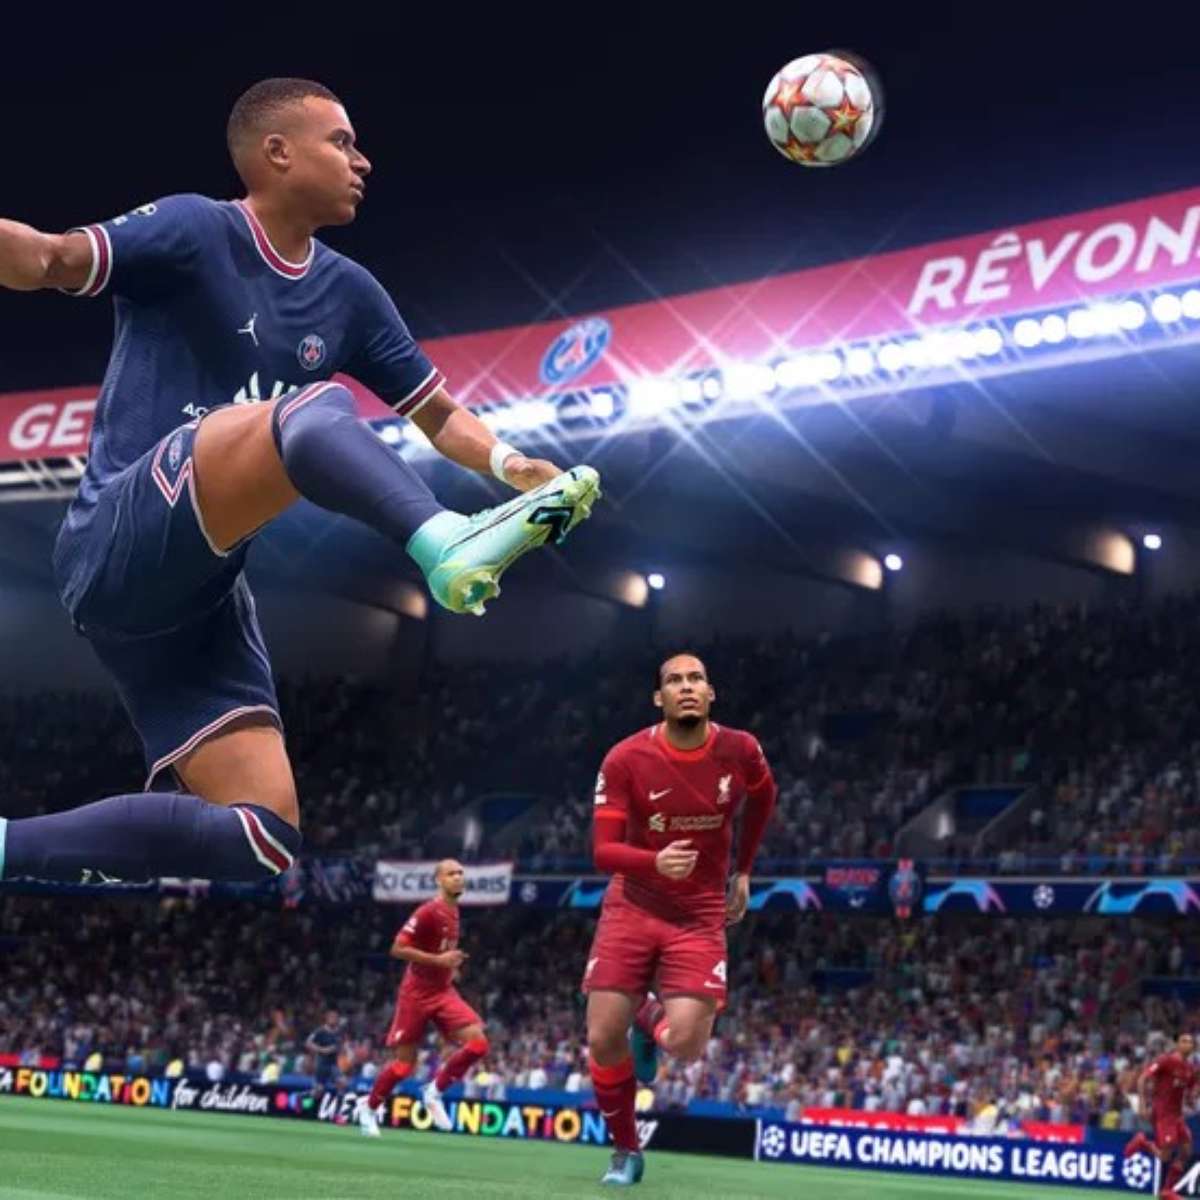 FIFA 23 no Game Pass: veja requisitos para rodar no PC - Jornal